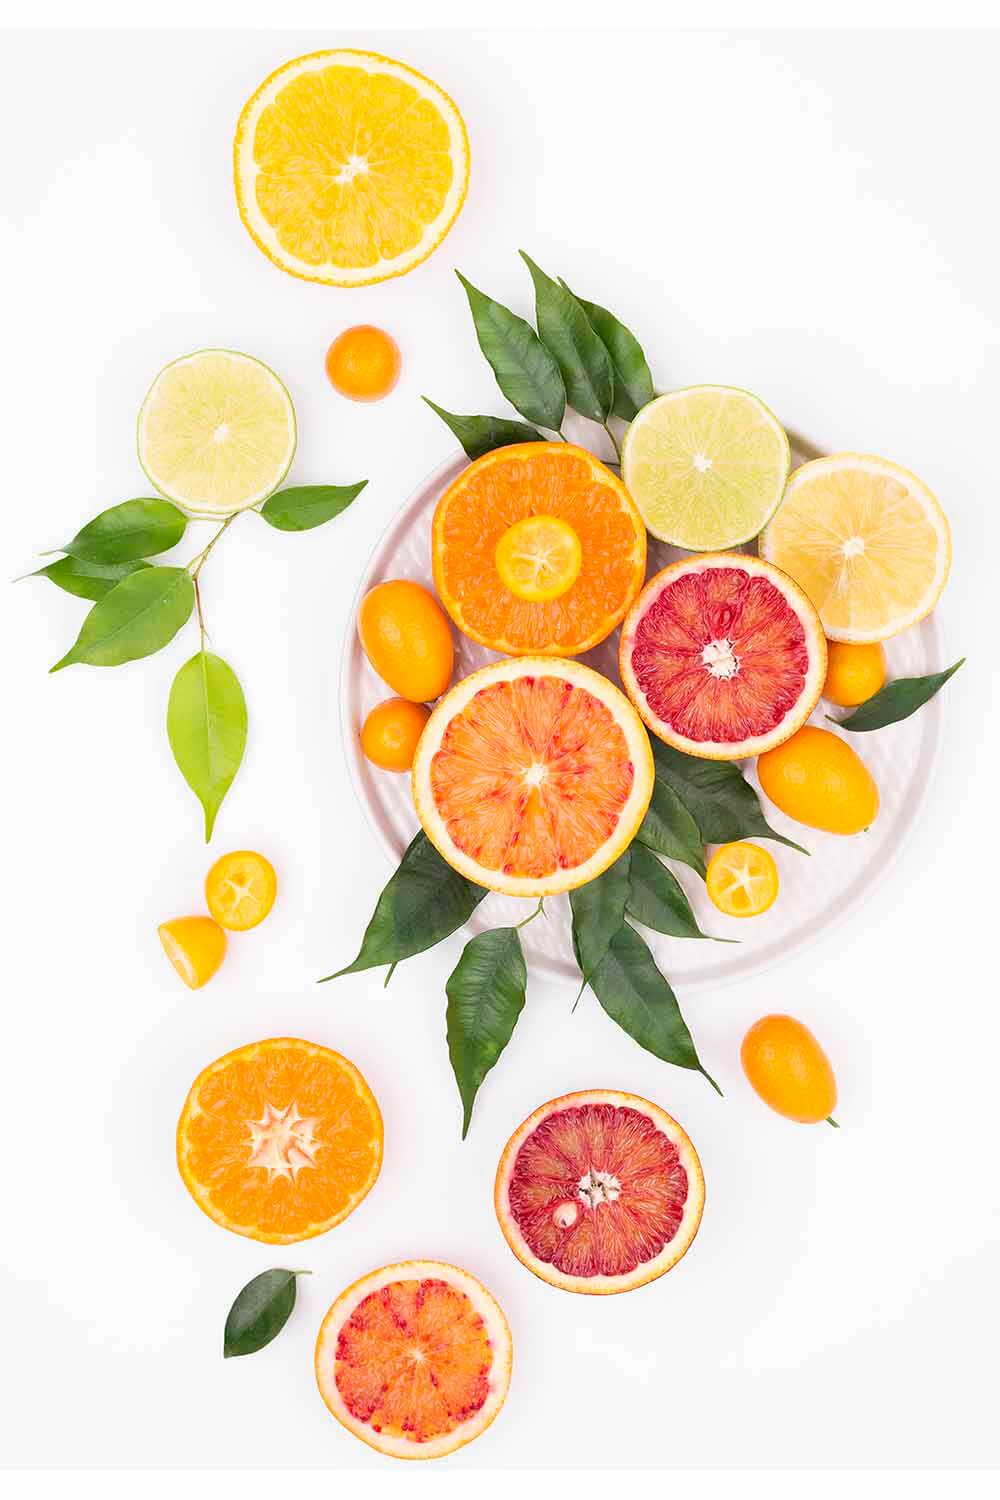 Vitamin C Health Benefits